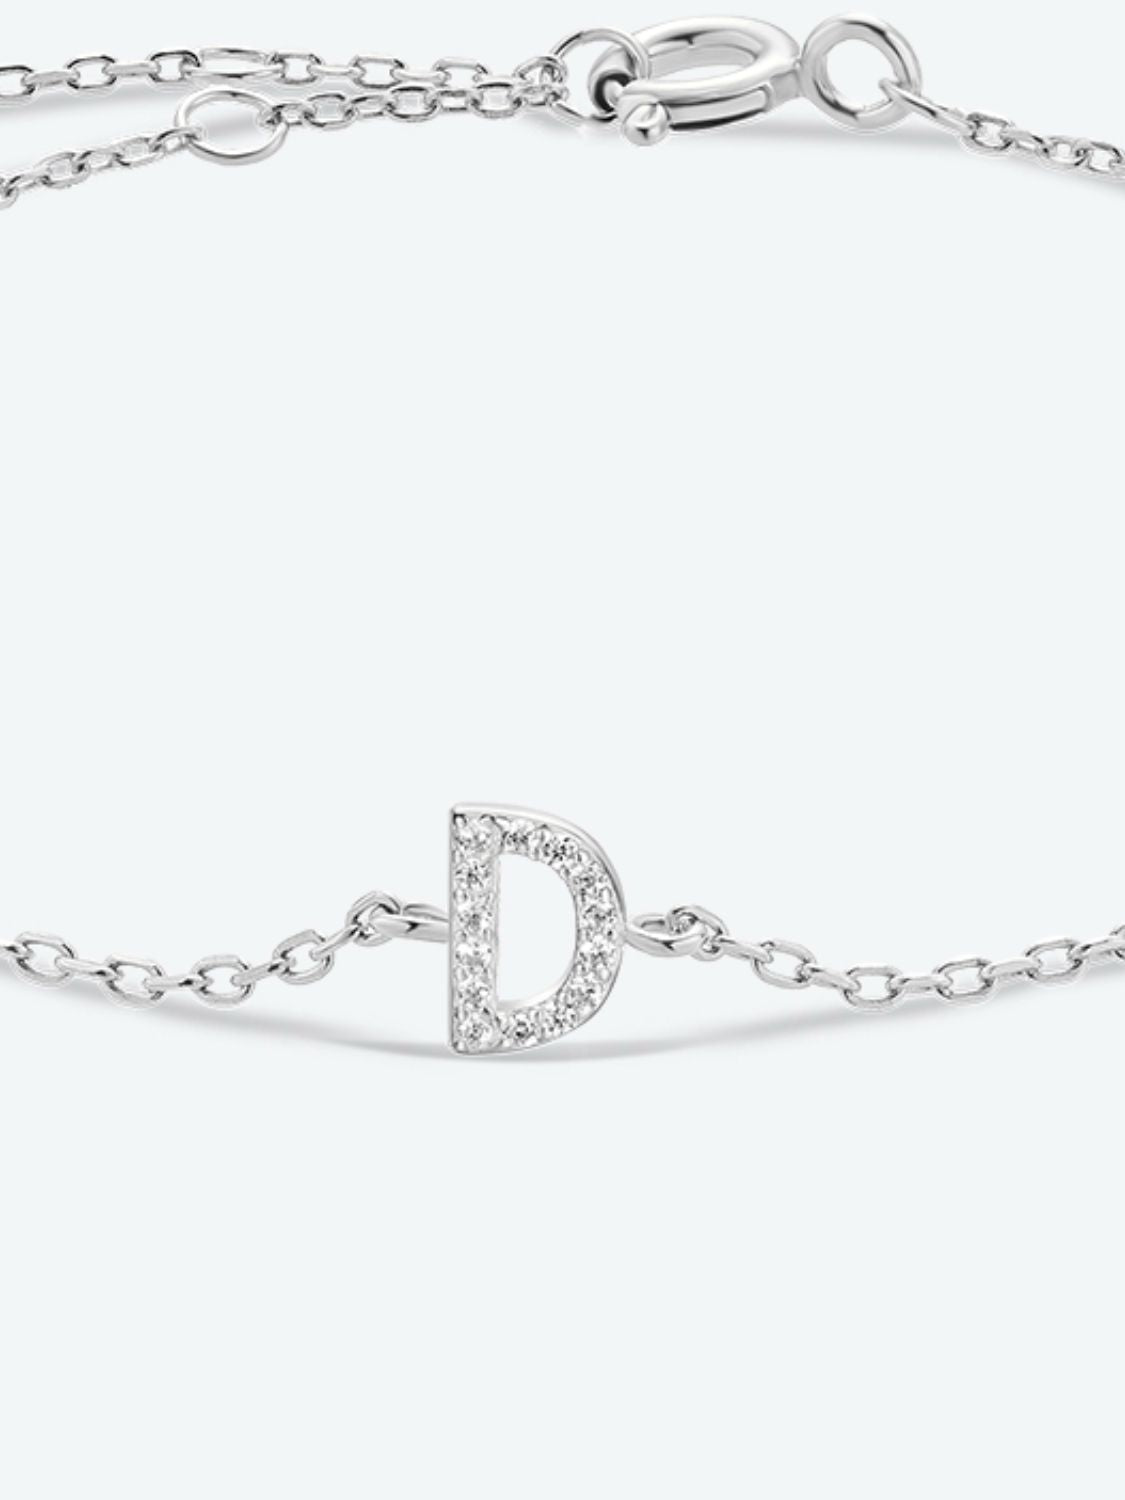 A To F Zircon 925 Sterling Silver Bracelet - Women’s Jewelry - Bracelets - 23 - 2024